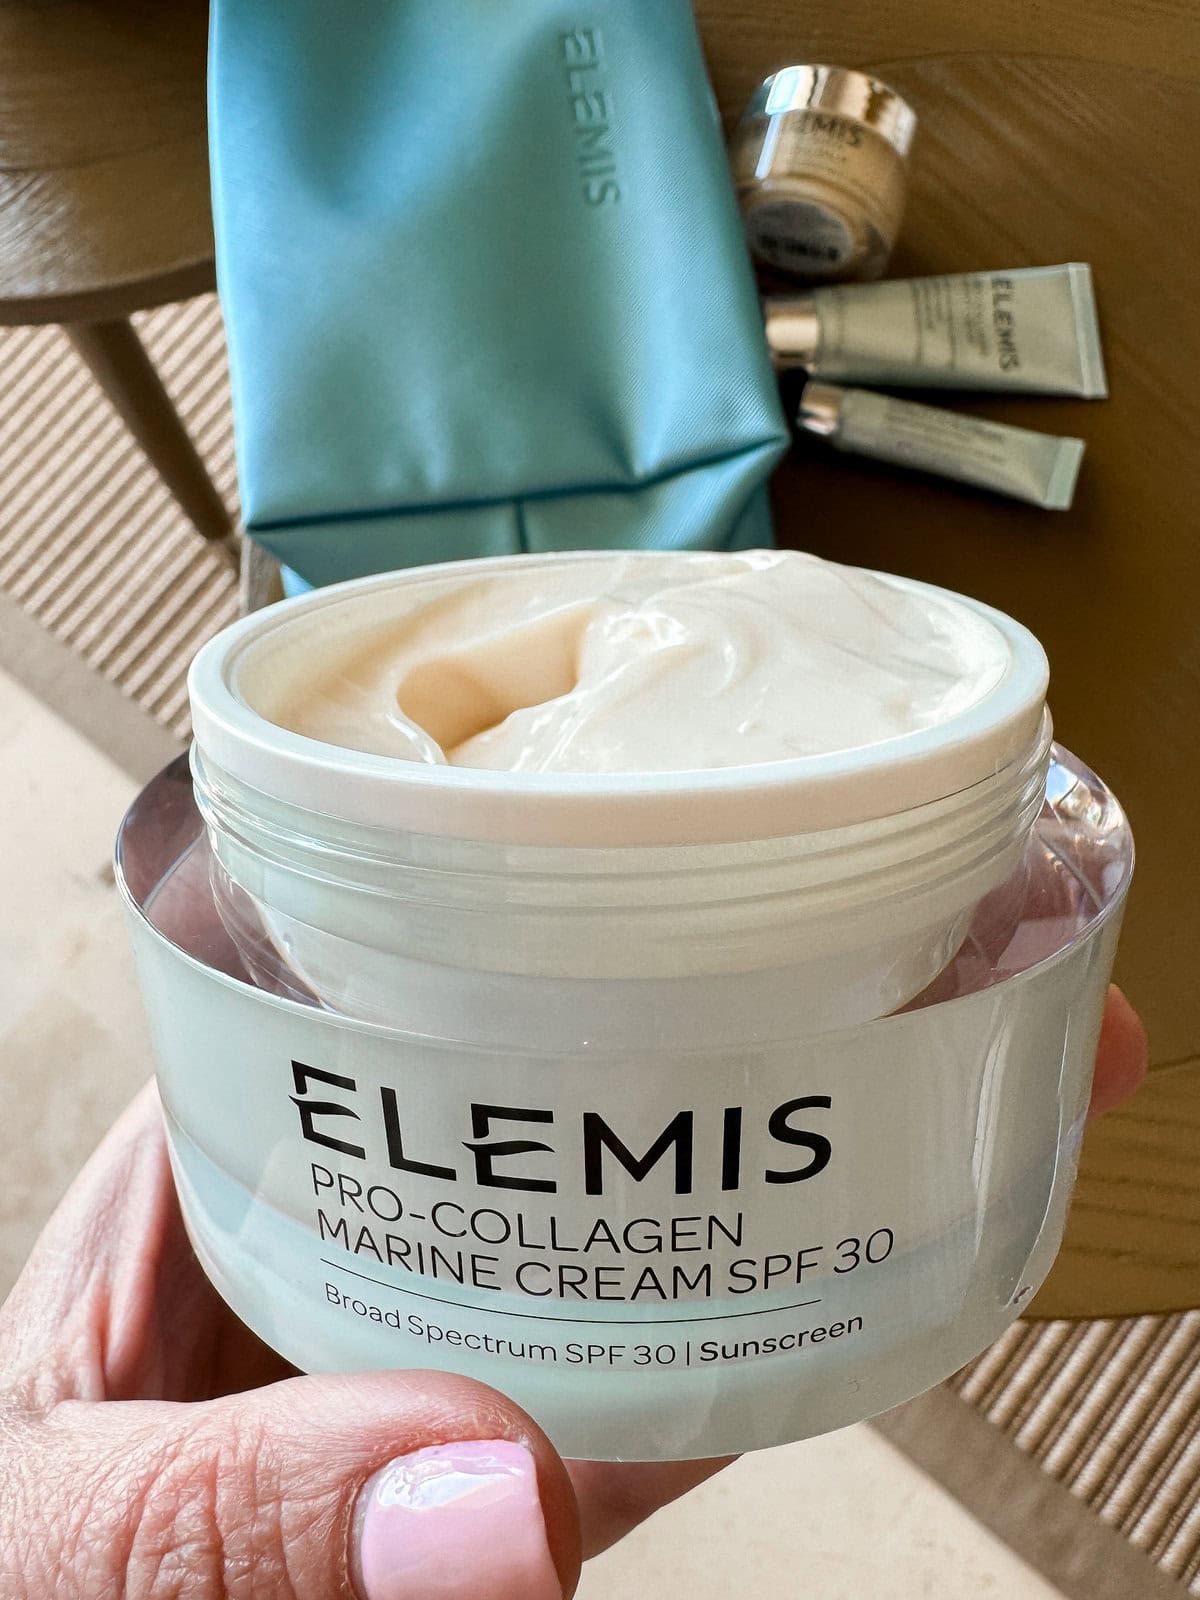 ELEMIS marine cream